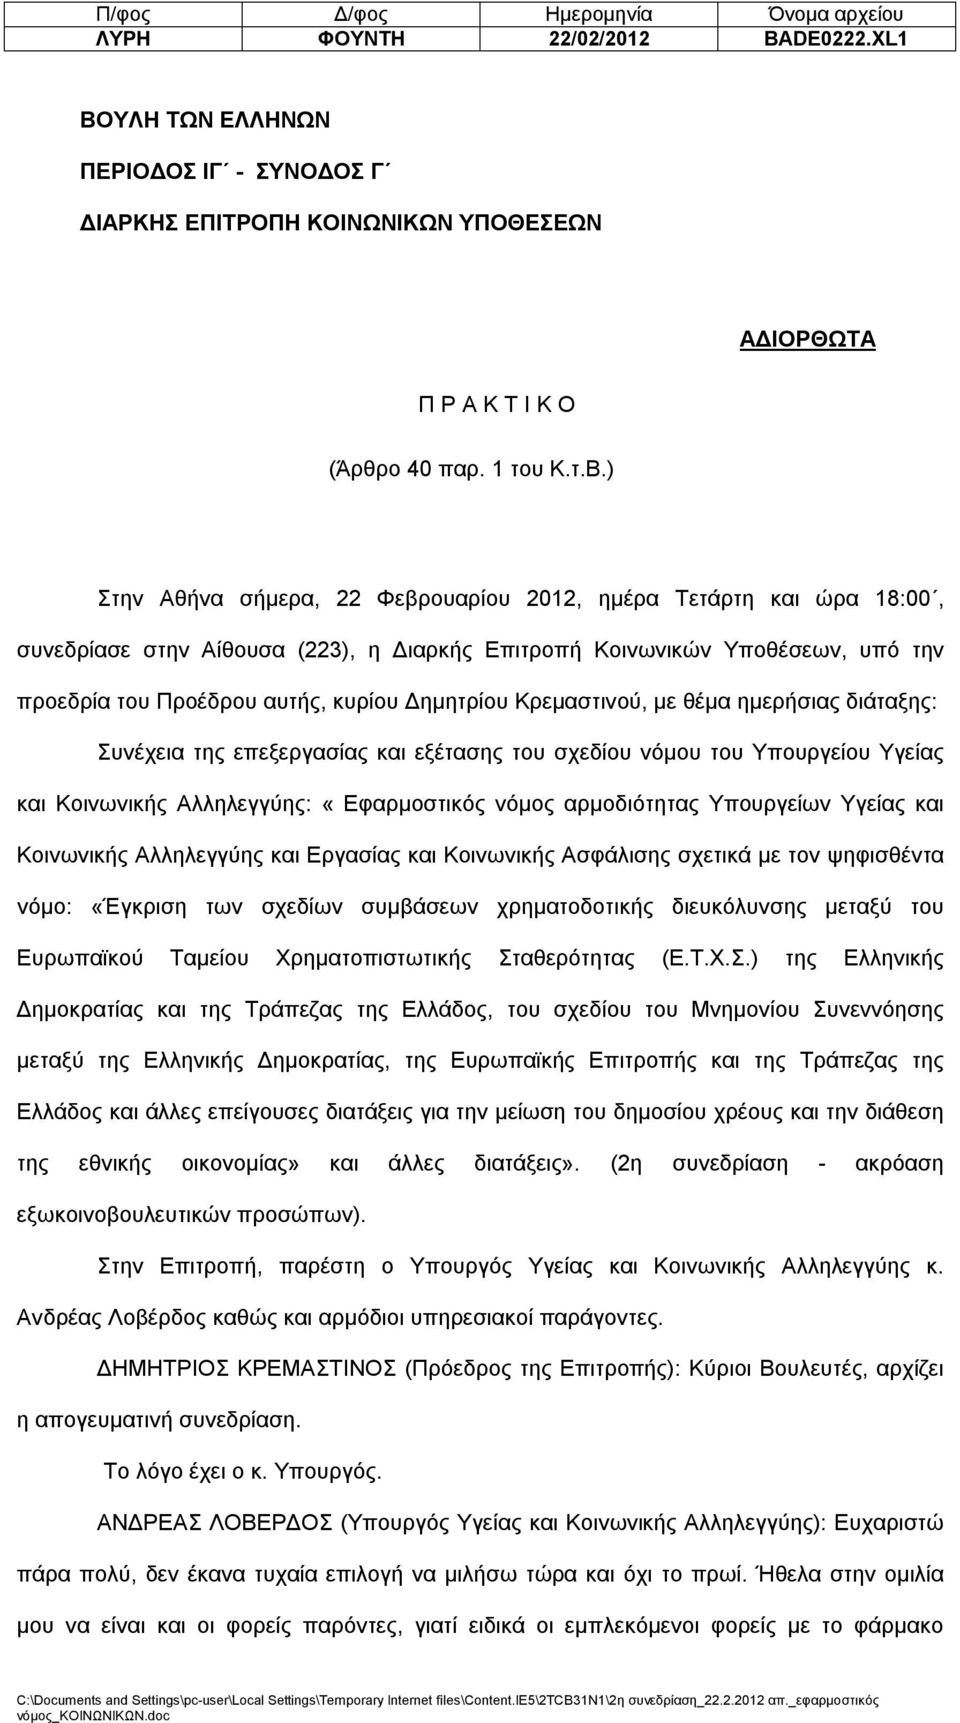 ) Στην Αθήνα σήμερα, 22 Φεβρουαρίου 2012, ημέρα Τετάρτη και ώρα 18:00, συνεδρίασε στην Αίθουσα (223), η Διαρκής Επιτροπή Κοινωνικών Υποθέσεων, υπό την προεδρία του Προέδρου αυτής, κυρίου Δημητρίου